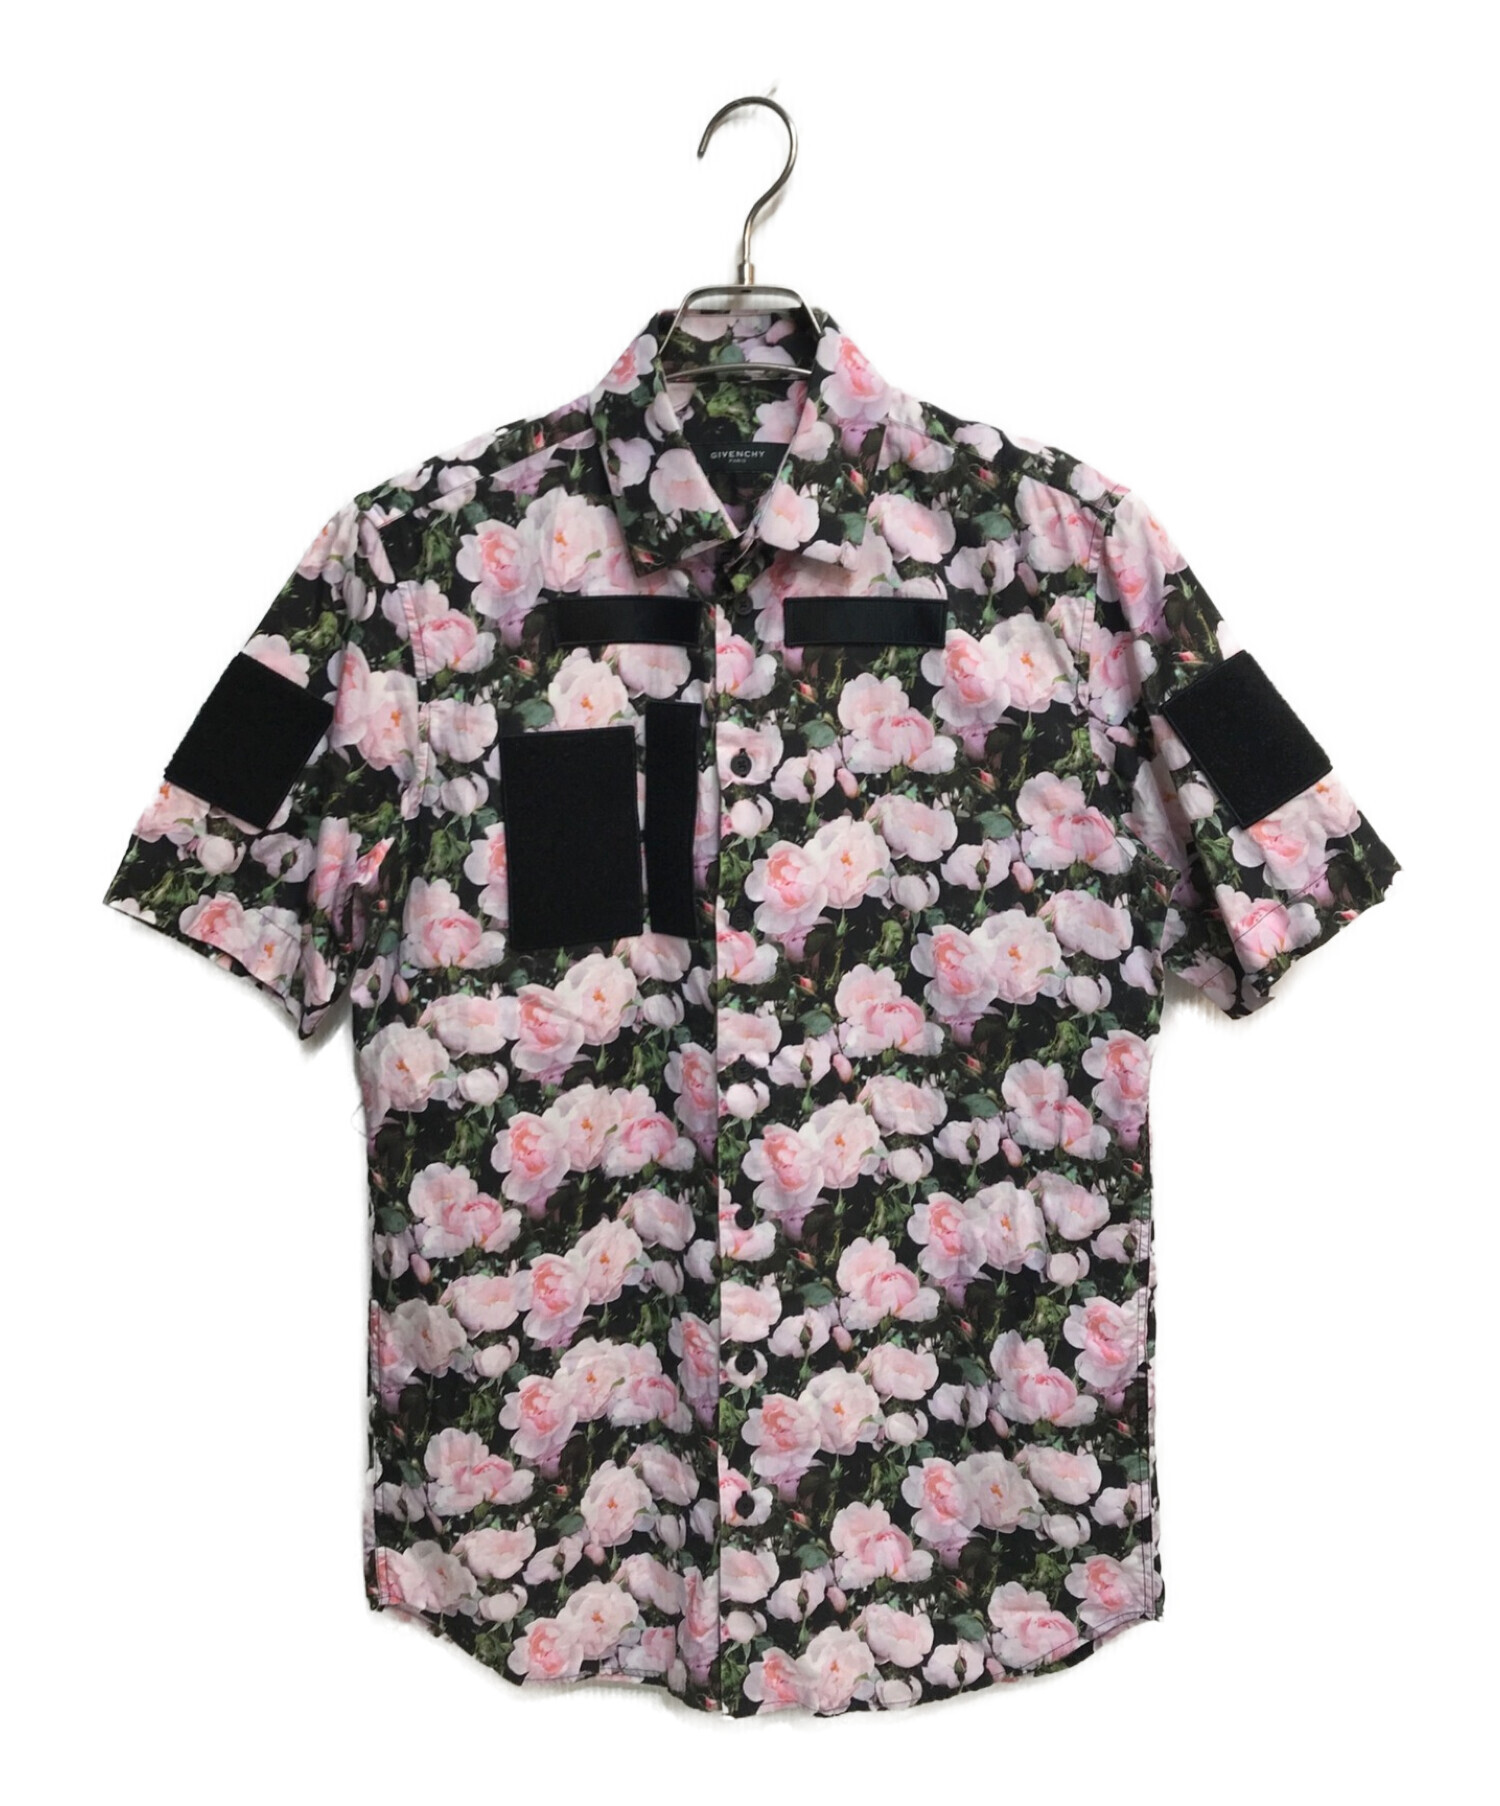 6,528円【極美品】GIVENCHY プリントロゴ シャツ ピンク Mサイズ